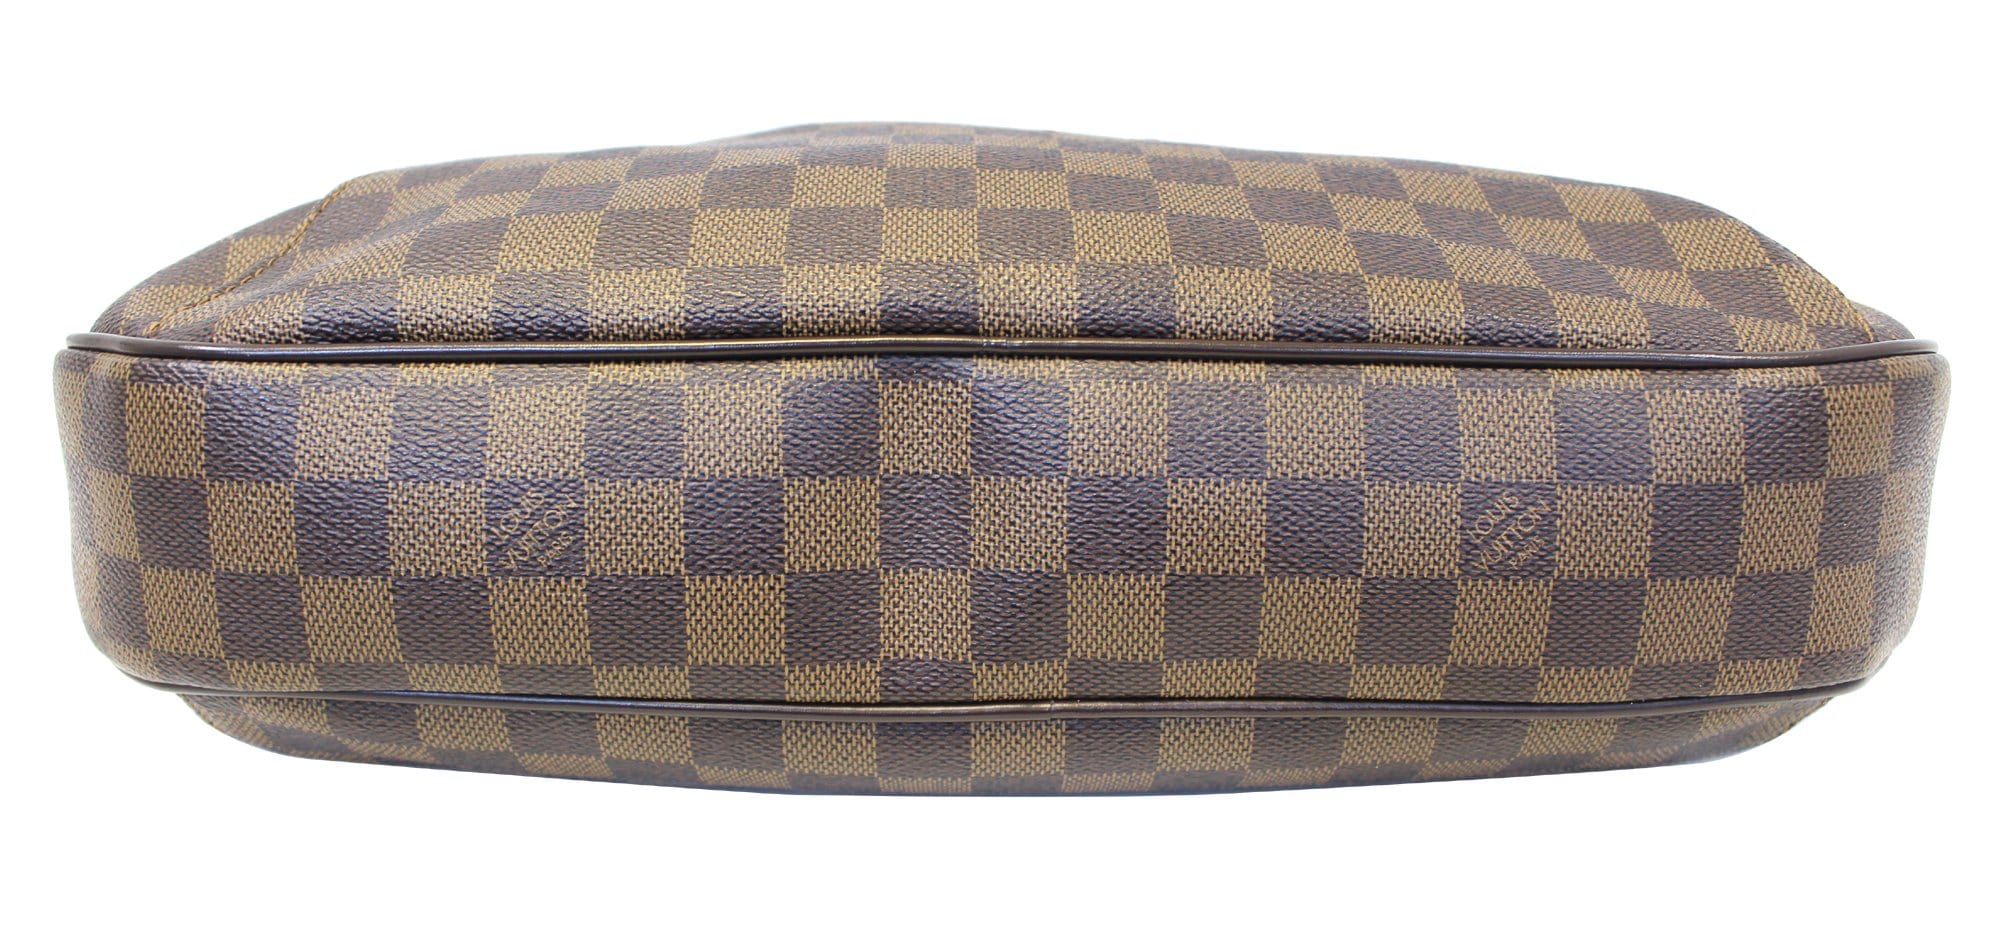 PRELOVED Louis Vuitton Damier Ebene Thames GM Shoulder Bag AR4038 0711 –  KimmieBBags LLC